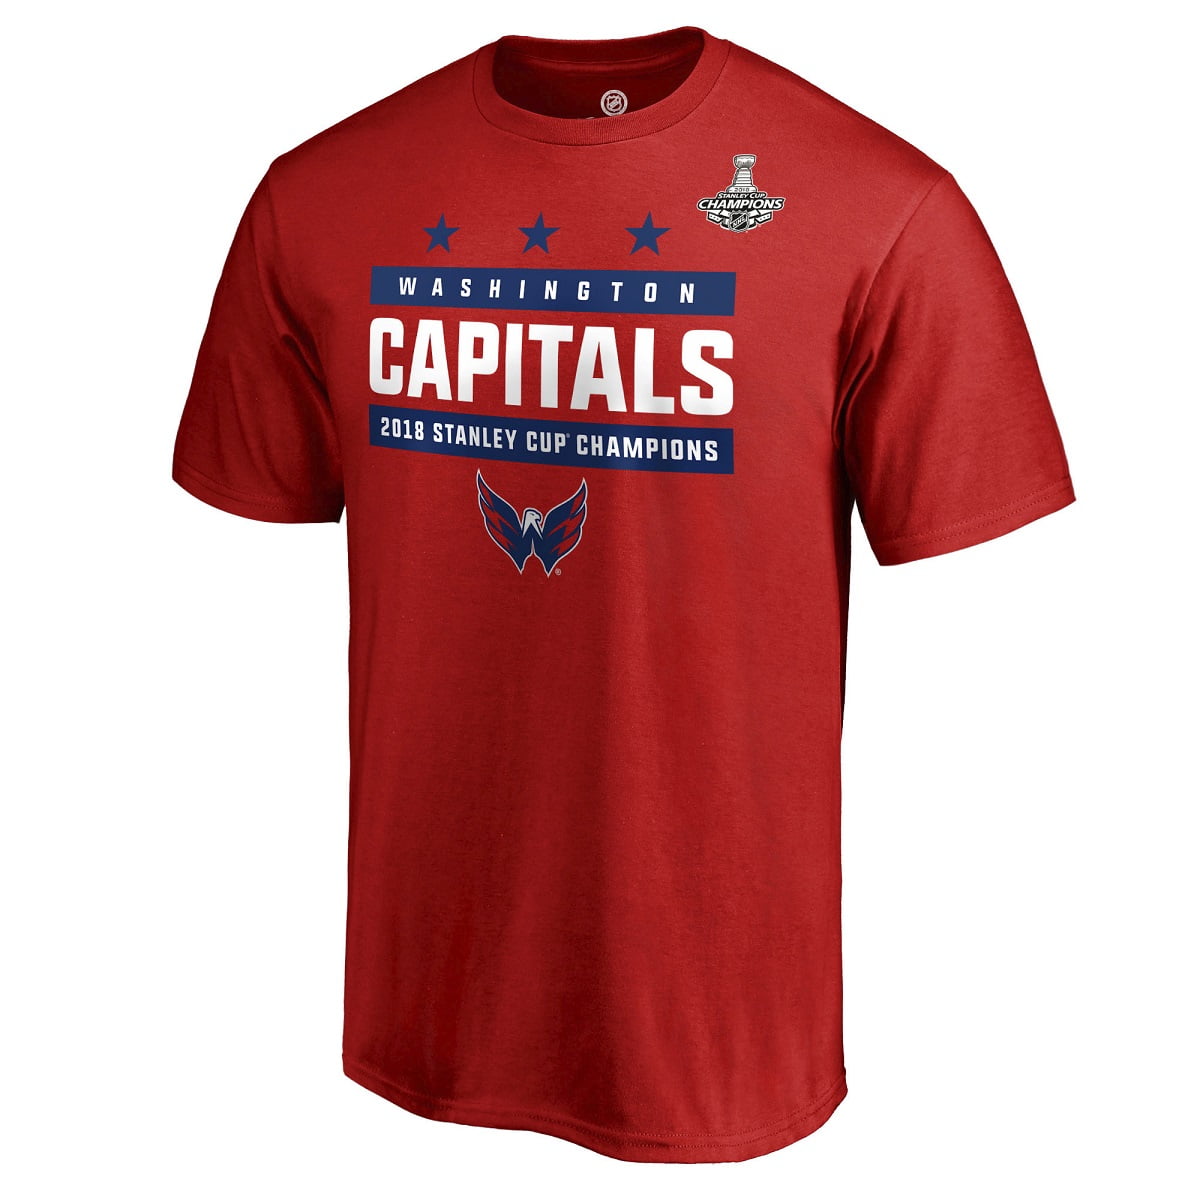 capitals championship shirt